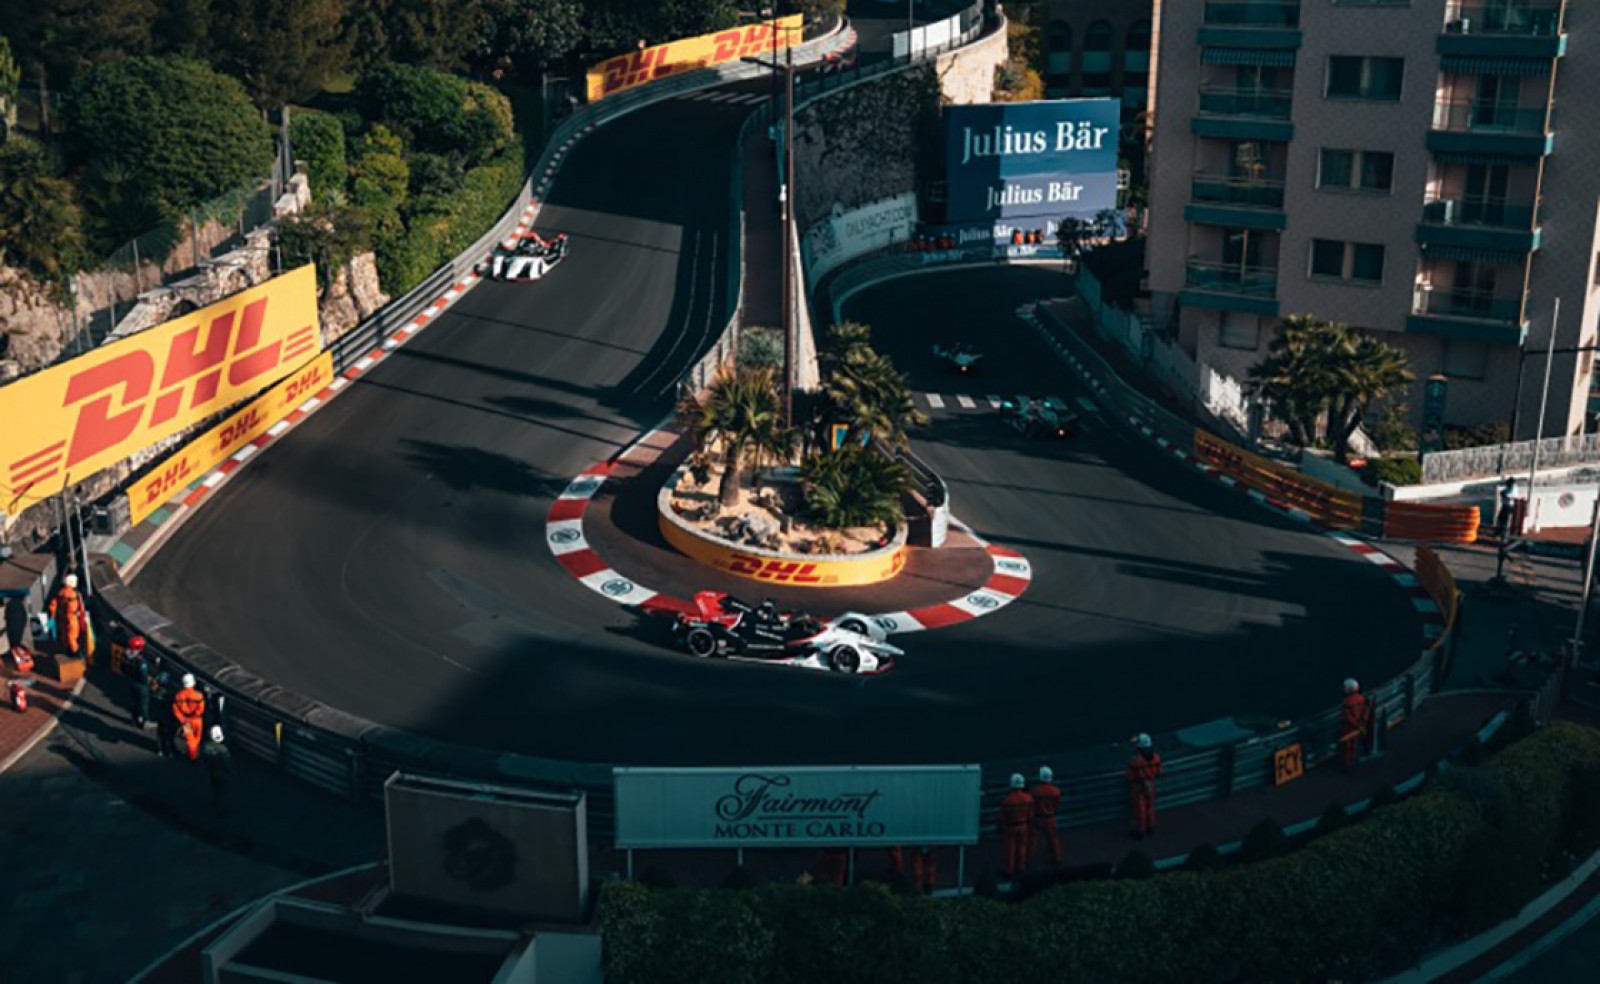 Private Chauffeur for Formula E Grand Prix in Monaco - Premium Vehicles & Services - Reactivity 24/7 - Ruby Services - Car Rental with Driver for Formula E Grand Prix in Monaco